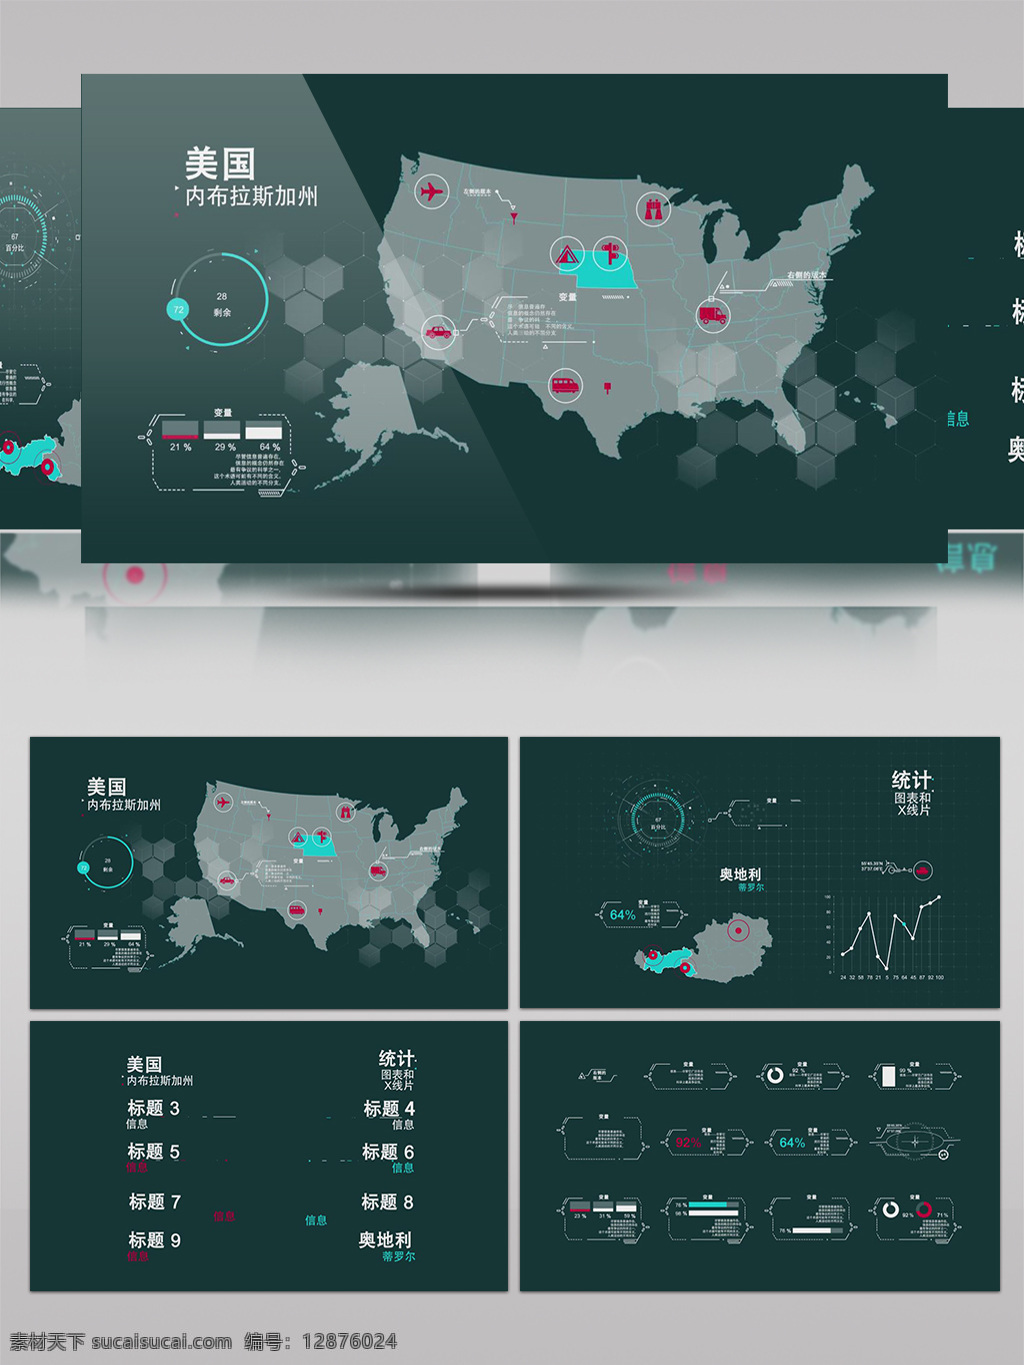 科技 感 信息 数据 图表 hud 动画 包 ae 模板 大数据 光束 酷炫 宣传 区域链 穿透 蓝黑 素材模板 片头片尾